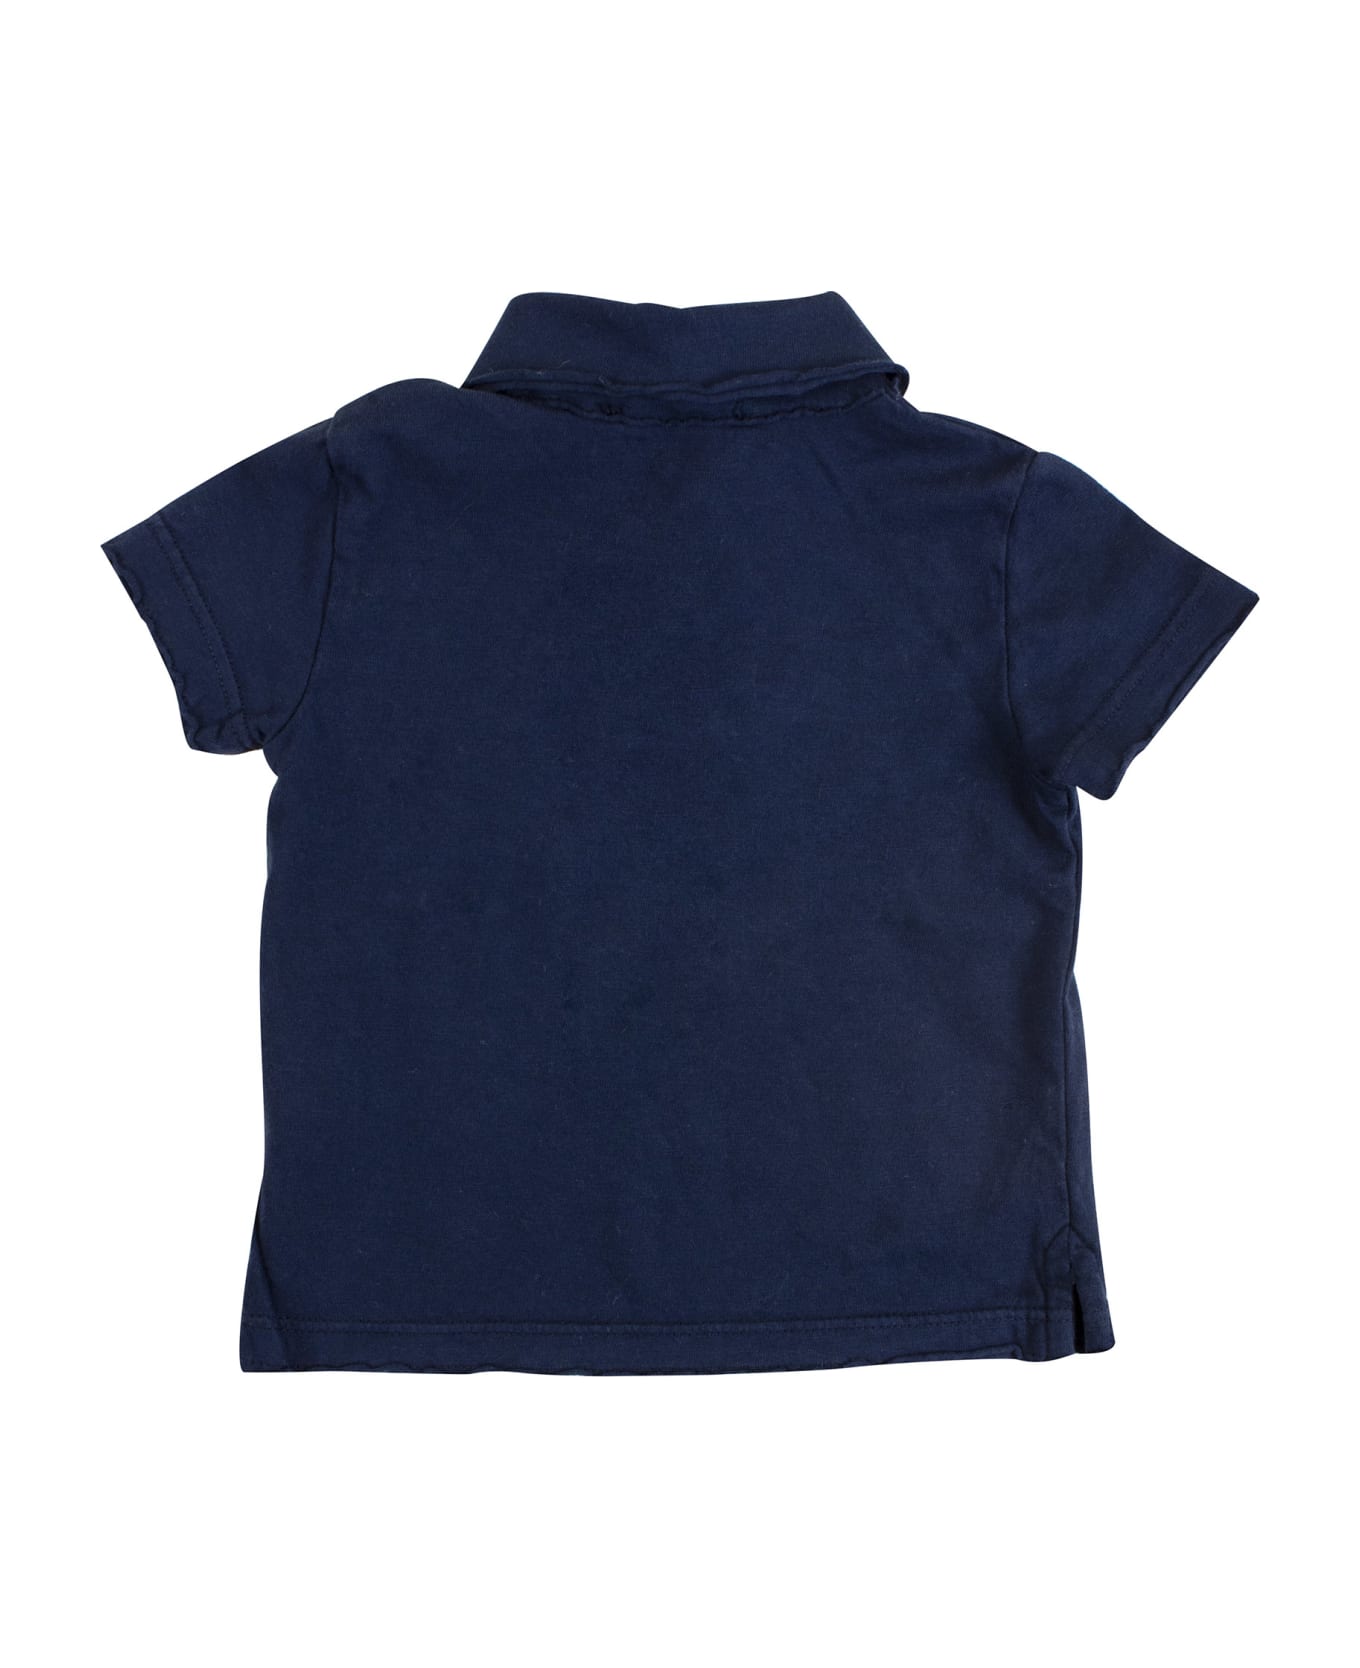 De Cavana Newborn Polo Shirt With Pocket - Blue